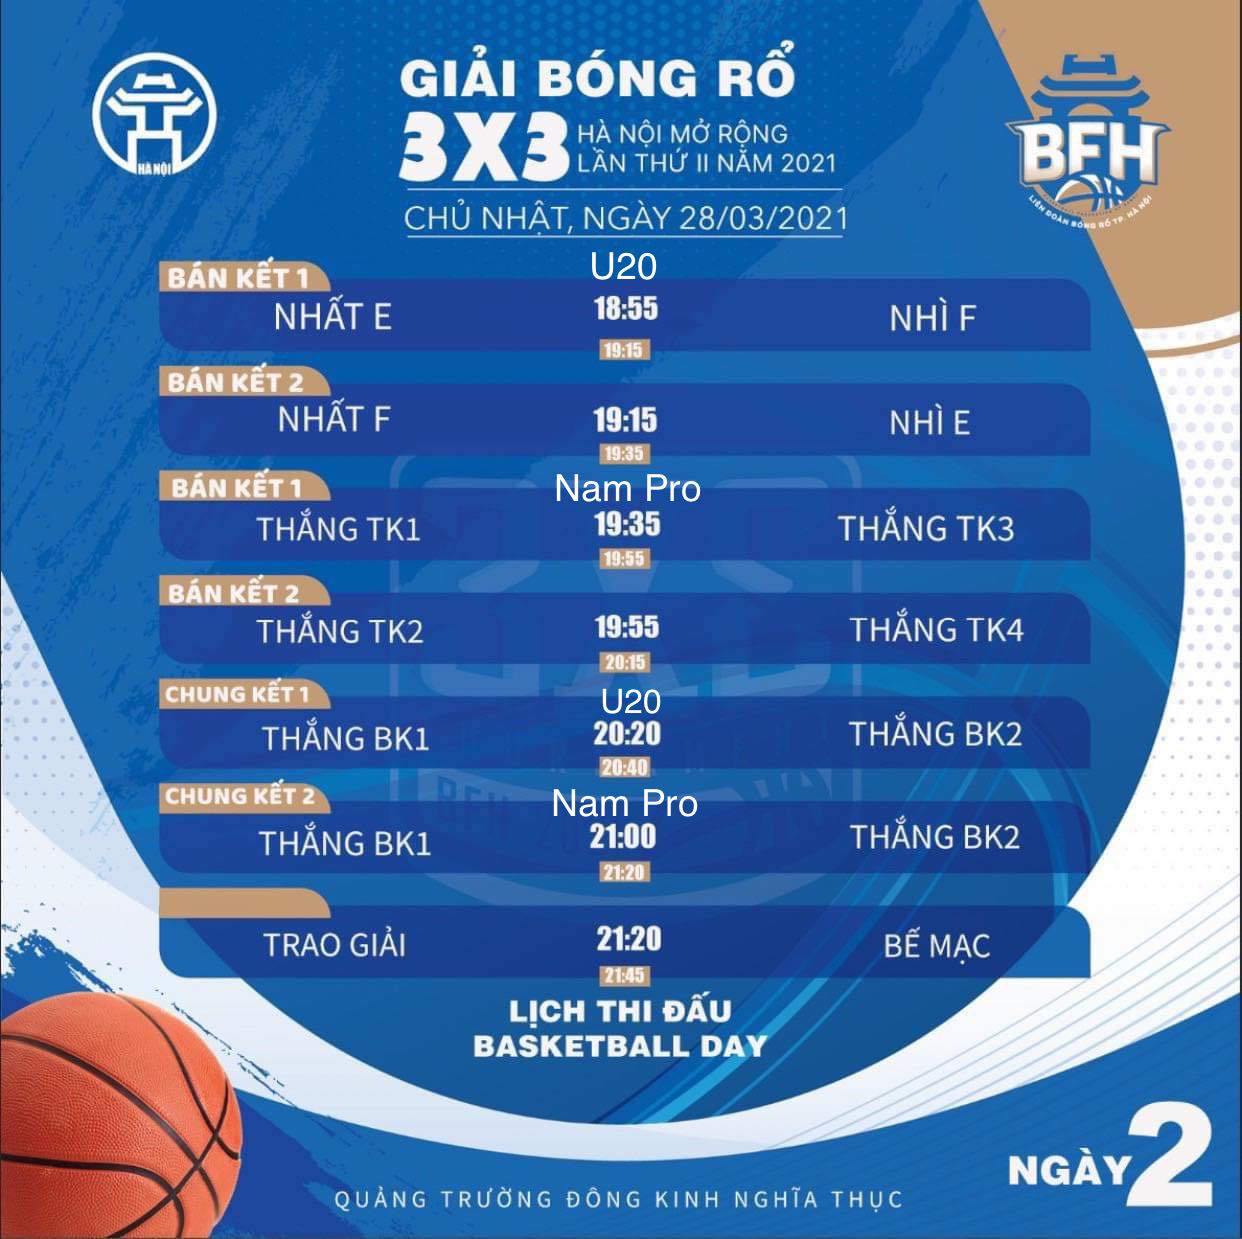 Lịch thi đấu giải bóng rổ 3x3 Hà Nội mở rộng lần 2 năm 2021 - Ảnh 9